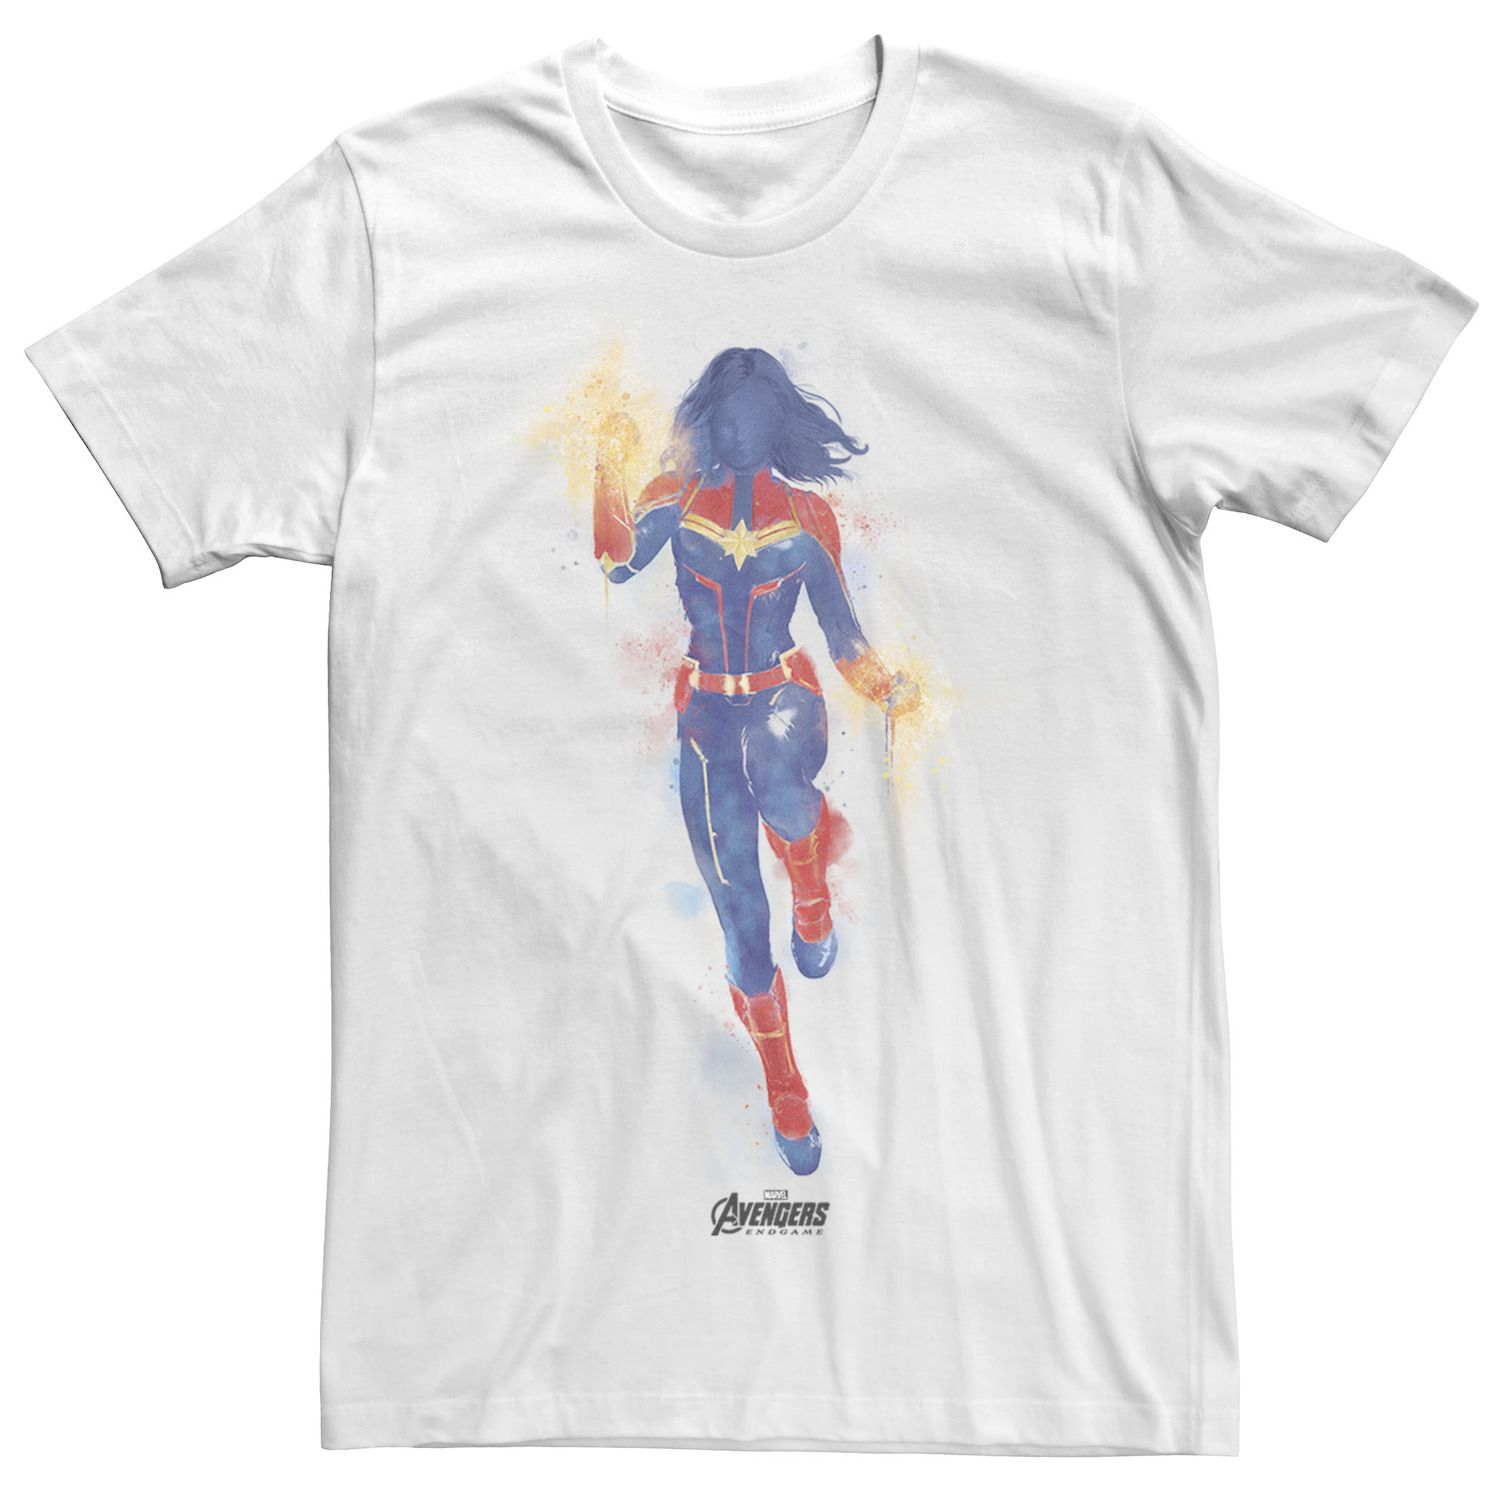 Мужская футболка с аэрозольной краской «Мстители: Финал» Marvel